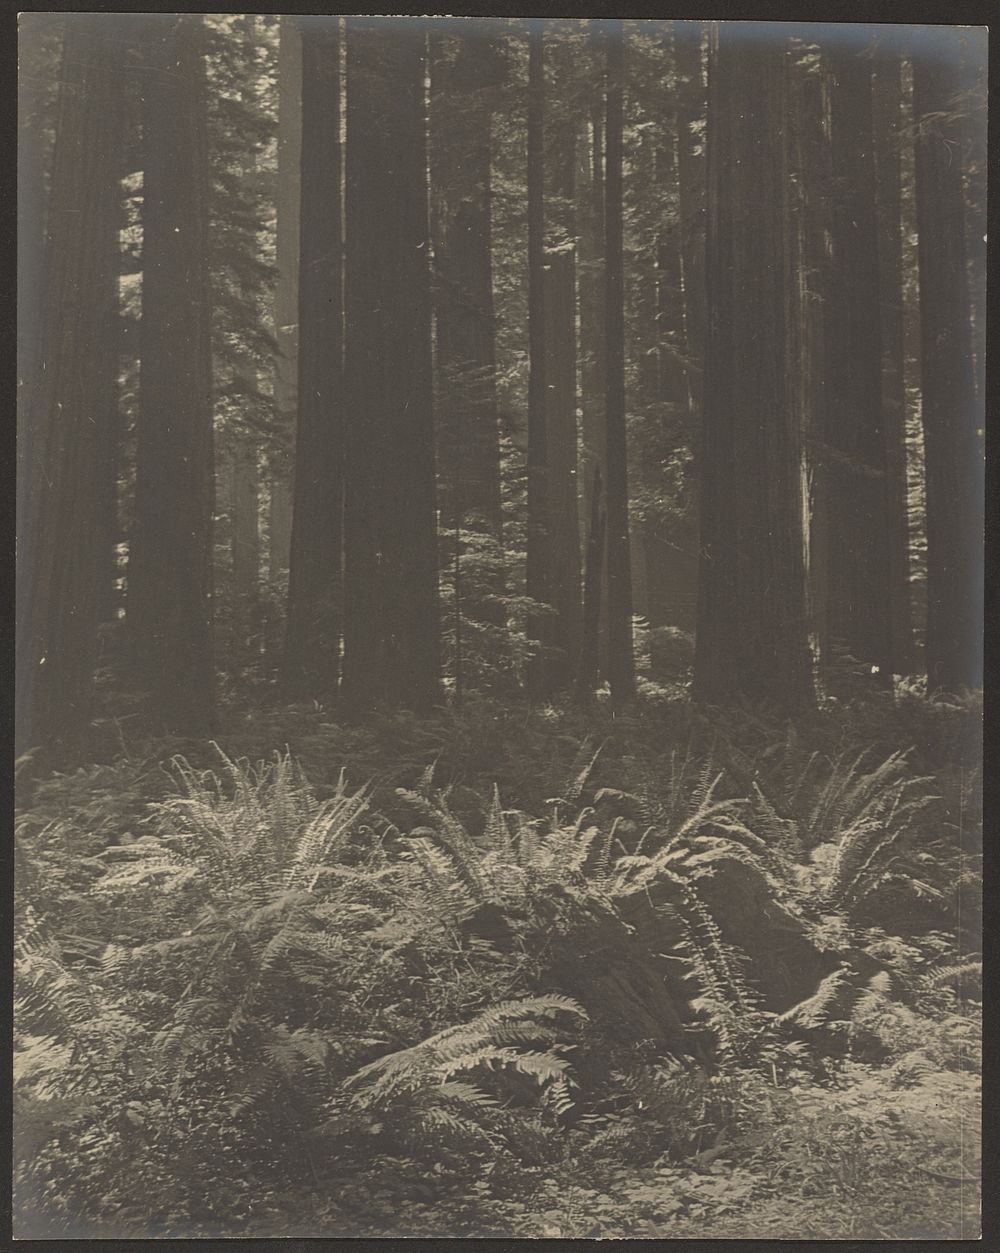 Fern in Woods by Louis Fleckenstein